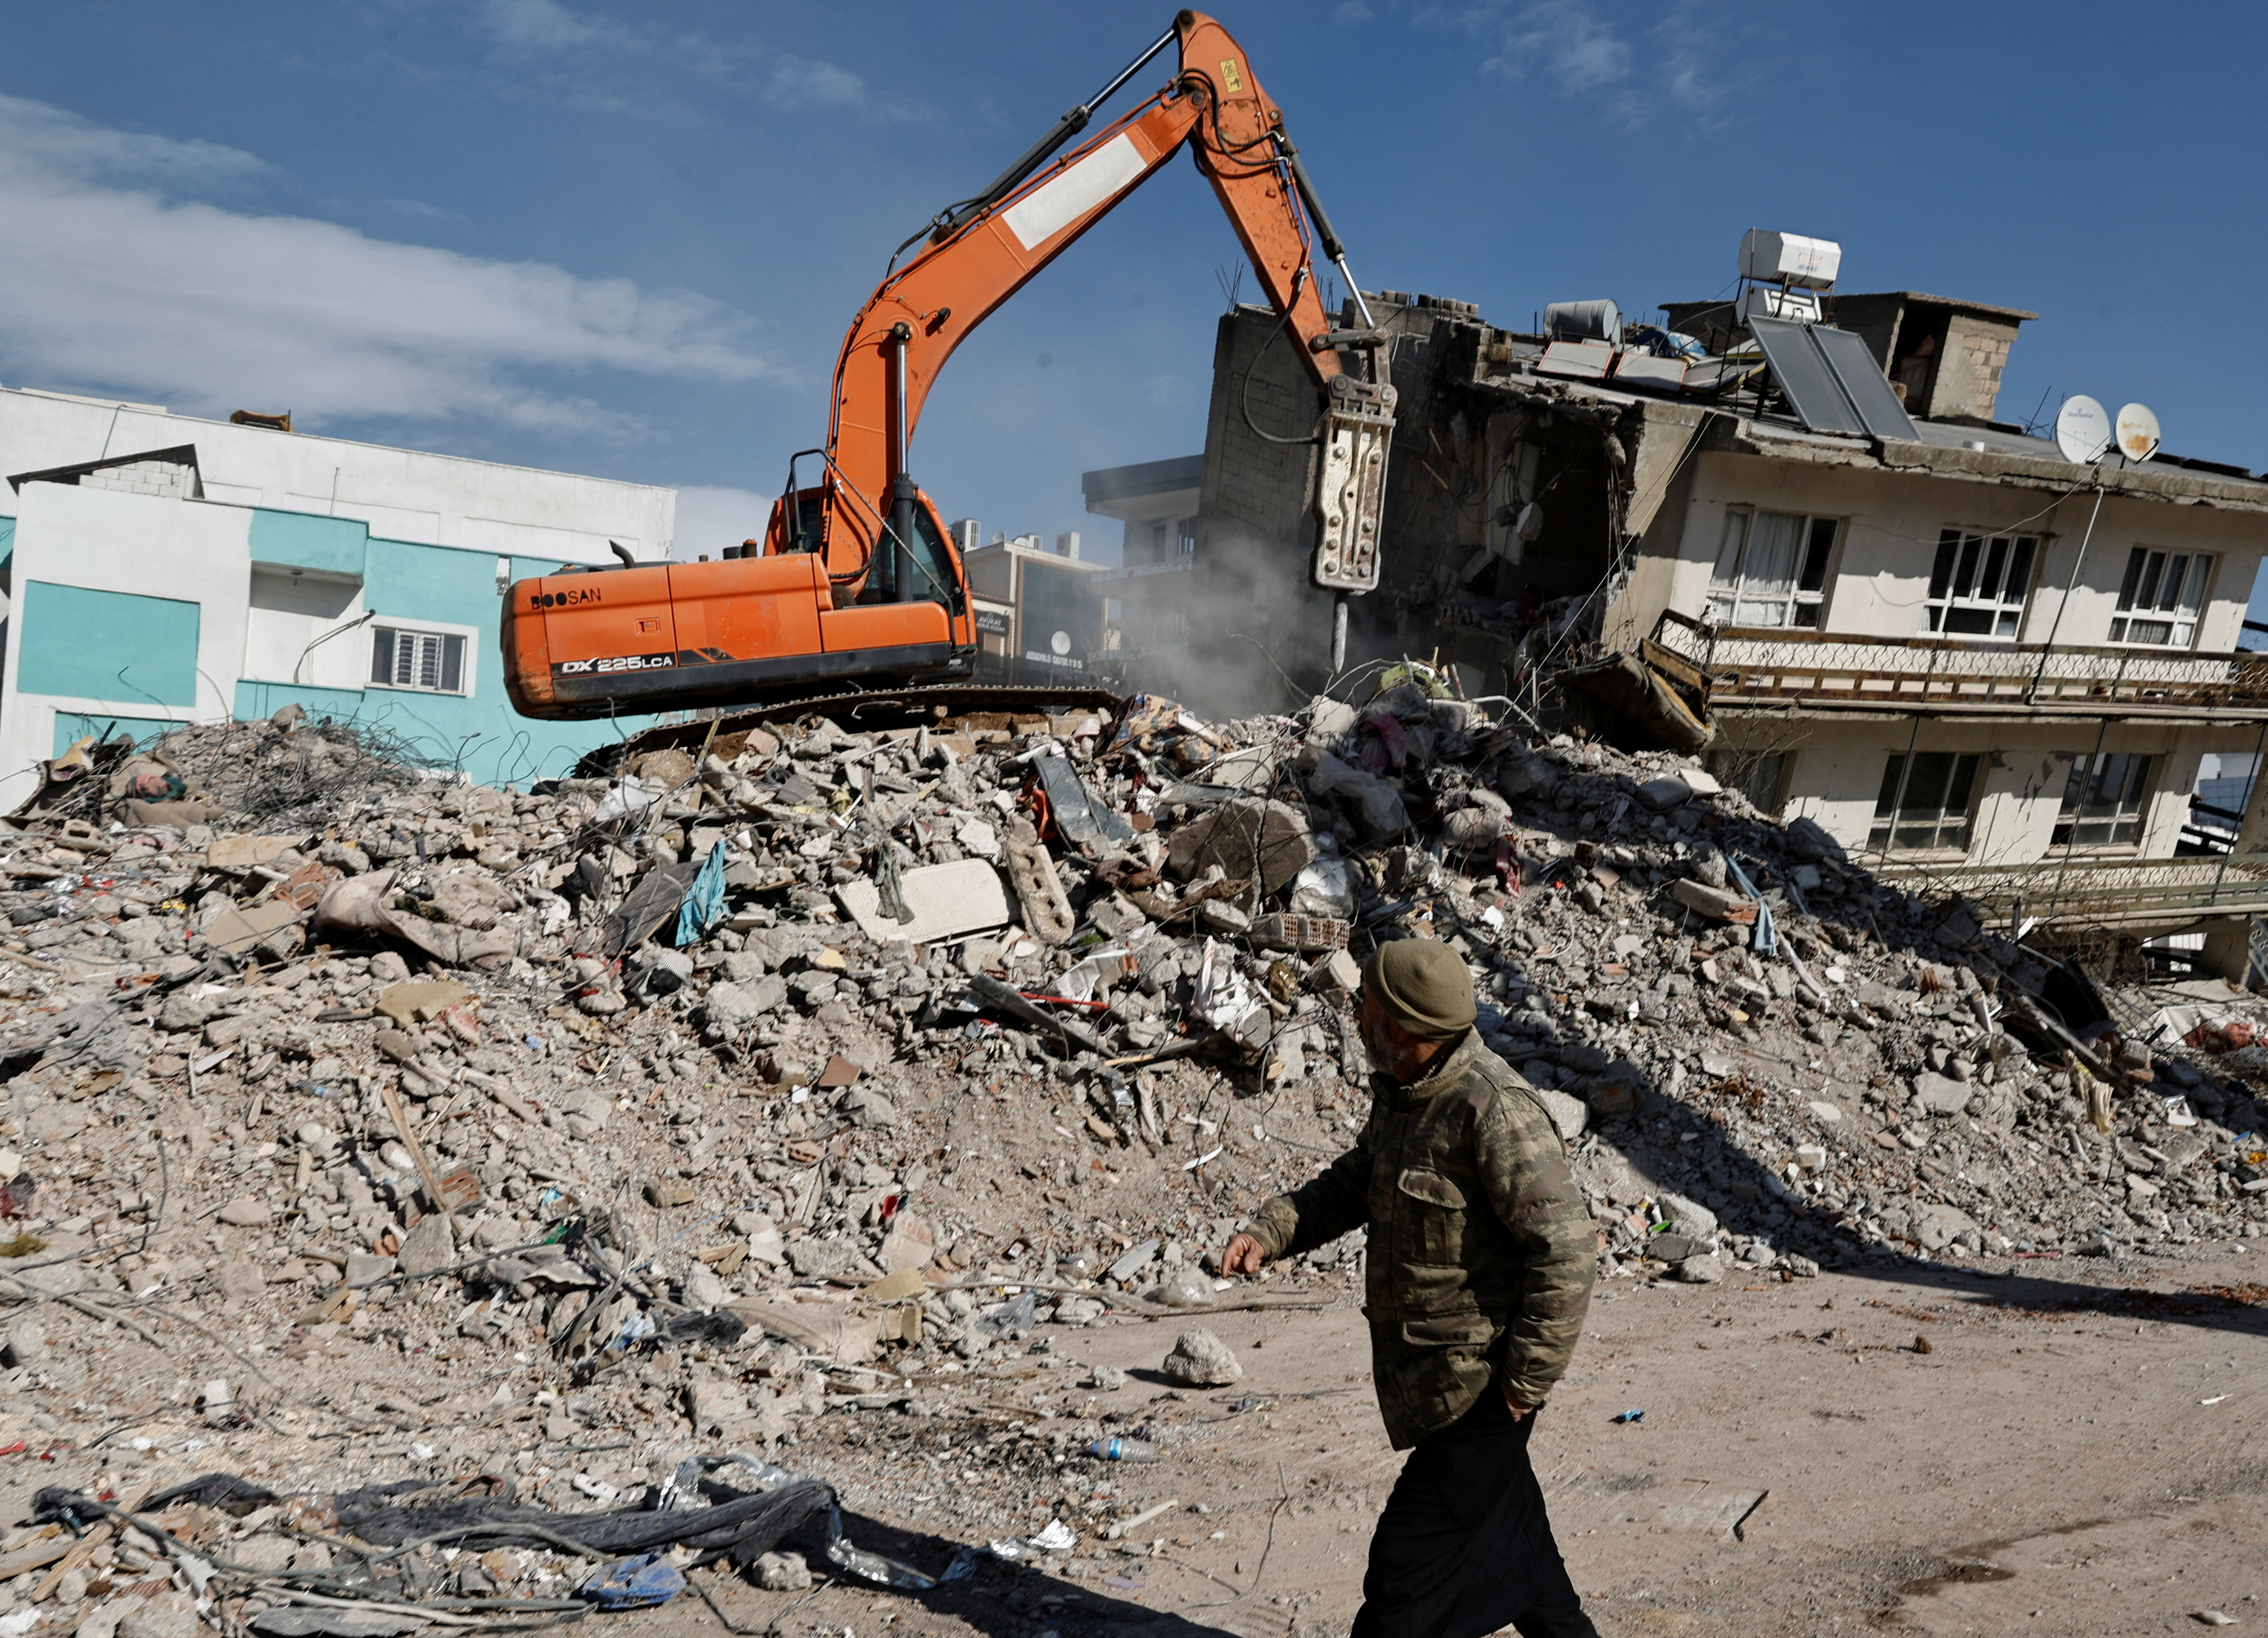 Trabajadores limpian los escombros de un edificio derrumbado tras un terremoto mortal, en Adiyaman, Turquía 15 de febrero de 2023. REUTERS/Thaier Al-Sudani